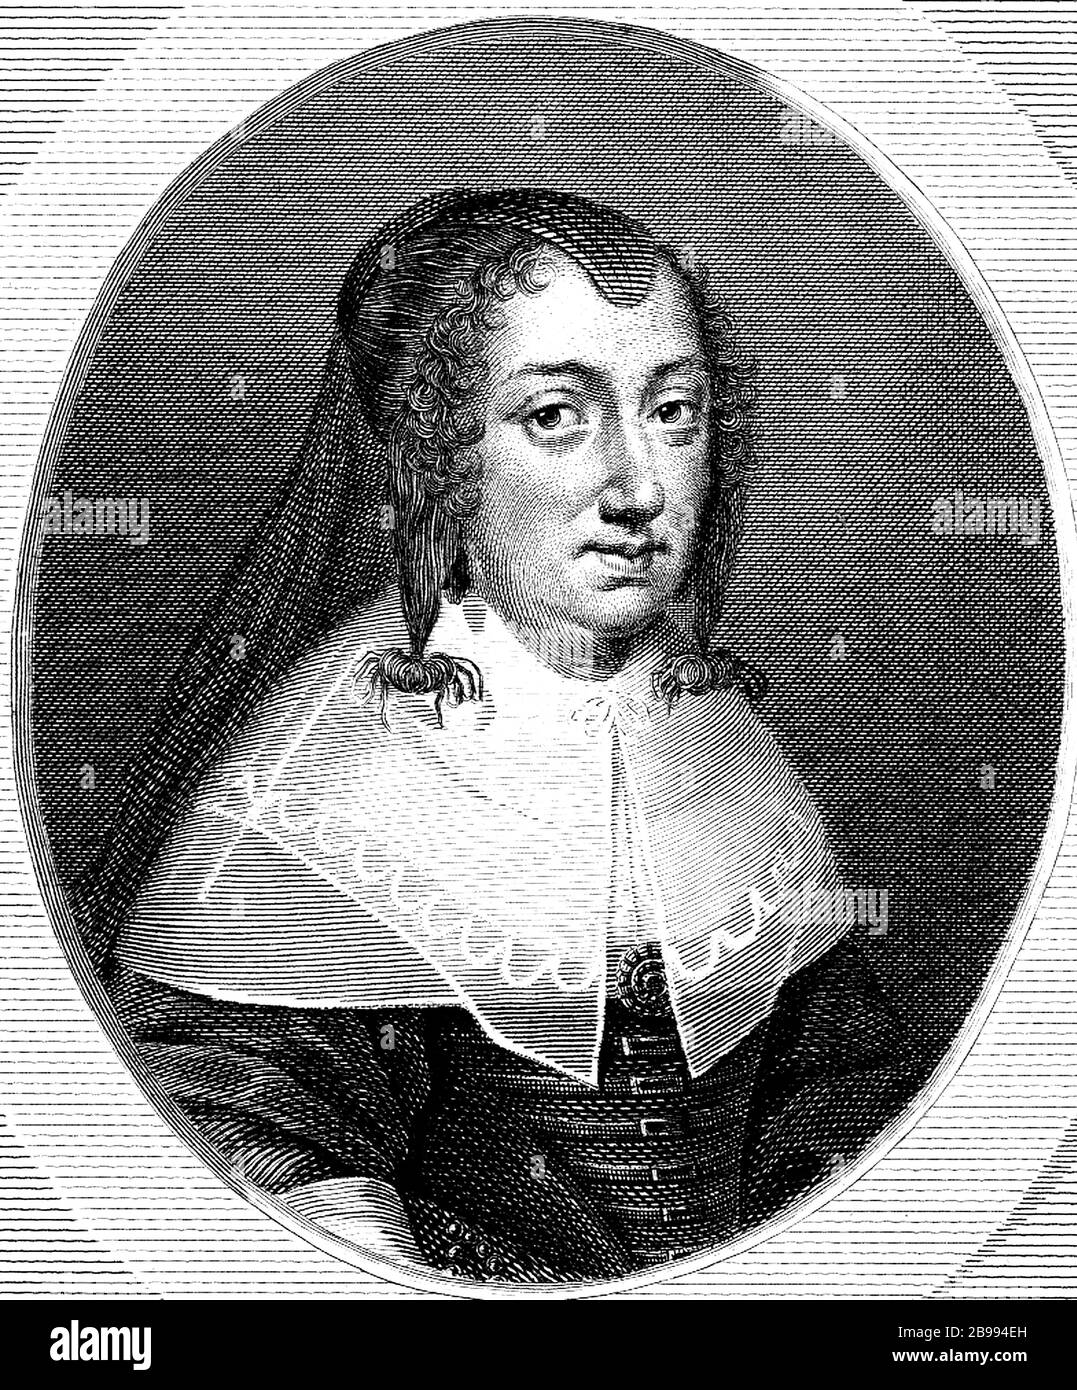 1645 CA , FRANCE: La Reine française ANNE D'AUTRICHE née des Habsbourg espagnols ( 1601 - 1666 ), épouse du roi LOUIS XIII ( 1601 - 1643 ), mère du roi Louis XIV Roi Soleil ( 1638 - 1715 ) et régent de France pendant sa minorité . Pendant son mandat, le Cardinal mazarin a été ministre en chef de la France . Portrait par graveur non-identifié, 1810 CA. - ANNE d'Autriche - ASBURGO - ABSBURGO - Mazarino - NOBLESSE - NOBILI francesi - Nobiltà francese - FRANCIA - illustrazione - illustration - gravure - incisione - Regina di Francia - col - colletto - dentelle - pizzo - boucles - riccio Banque D'Images